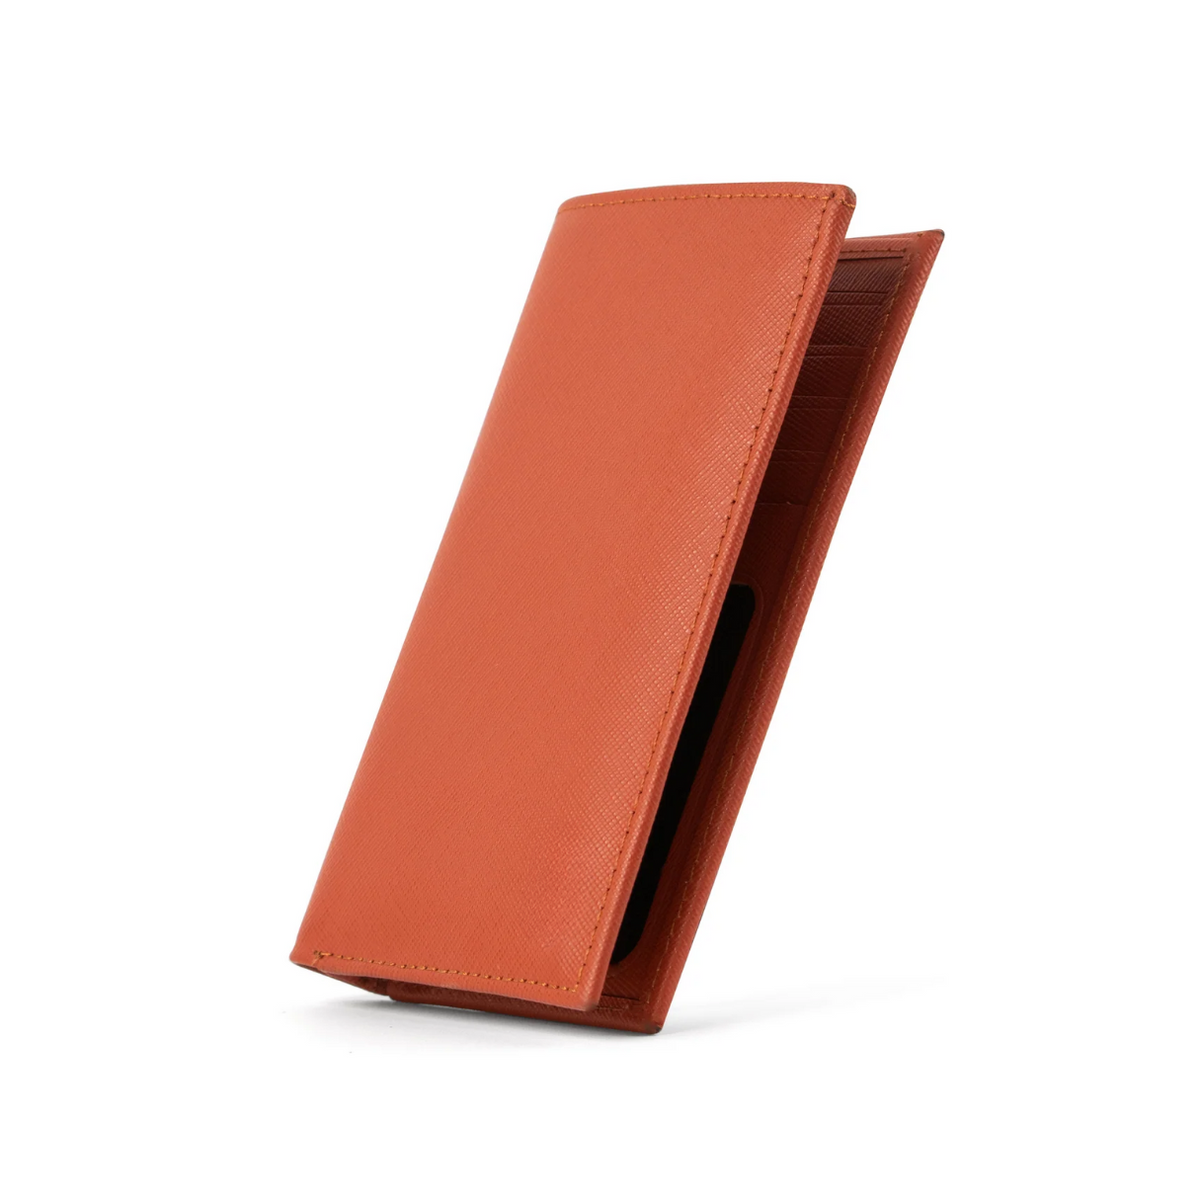 Orange Saffiano Peltskin Long Wallet